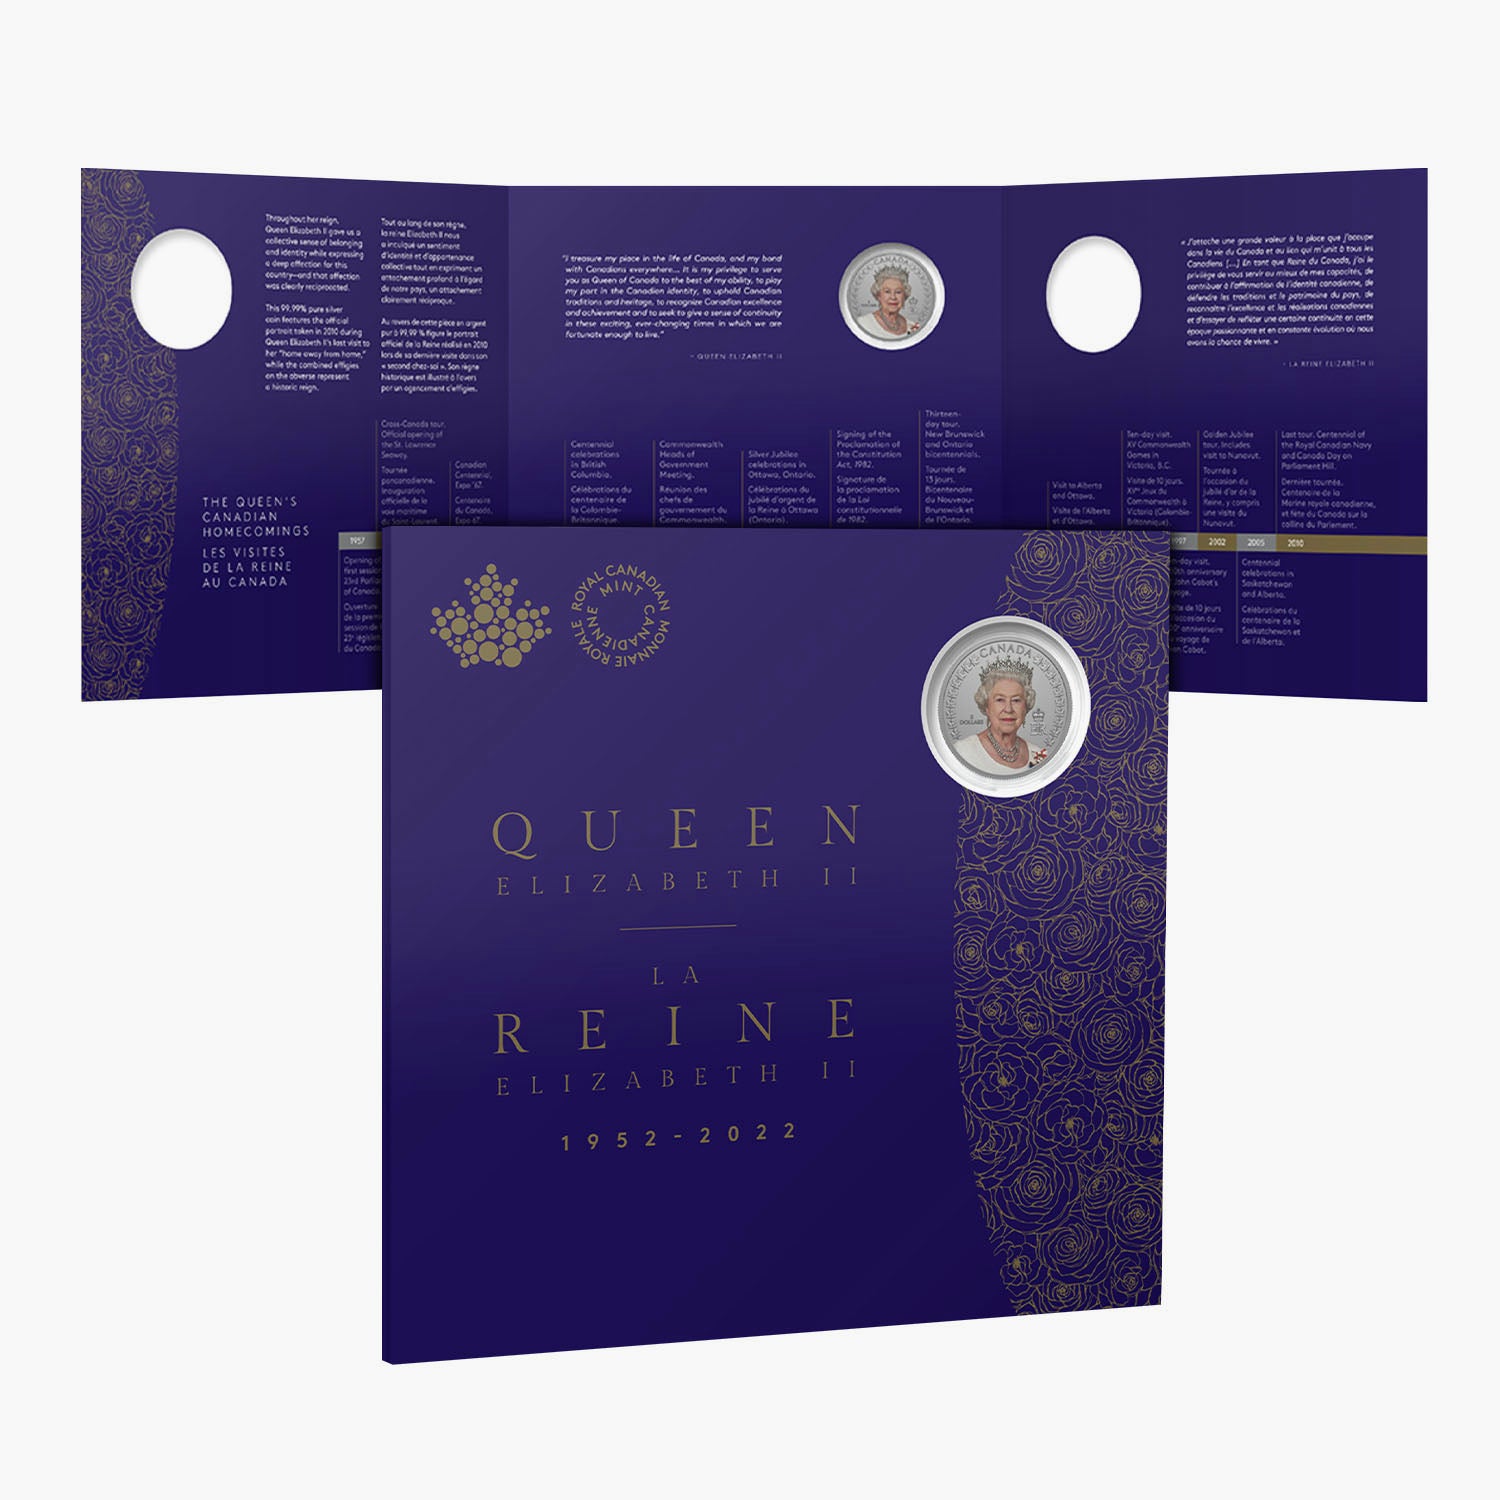 女王エリザベス 2 世の肖像 2022 上質銀貨